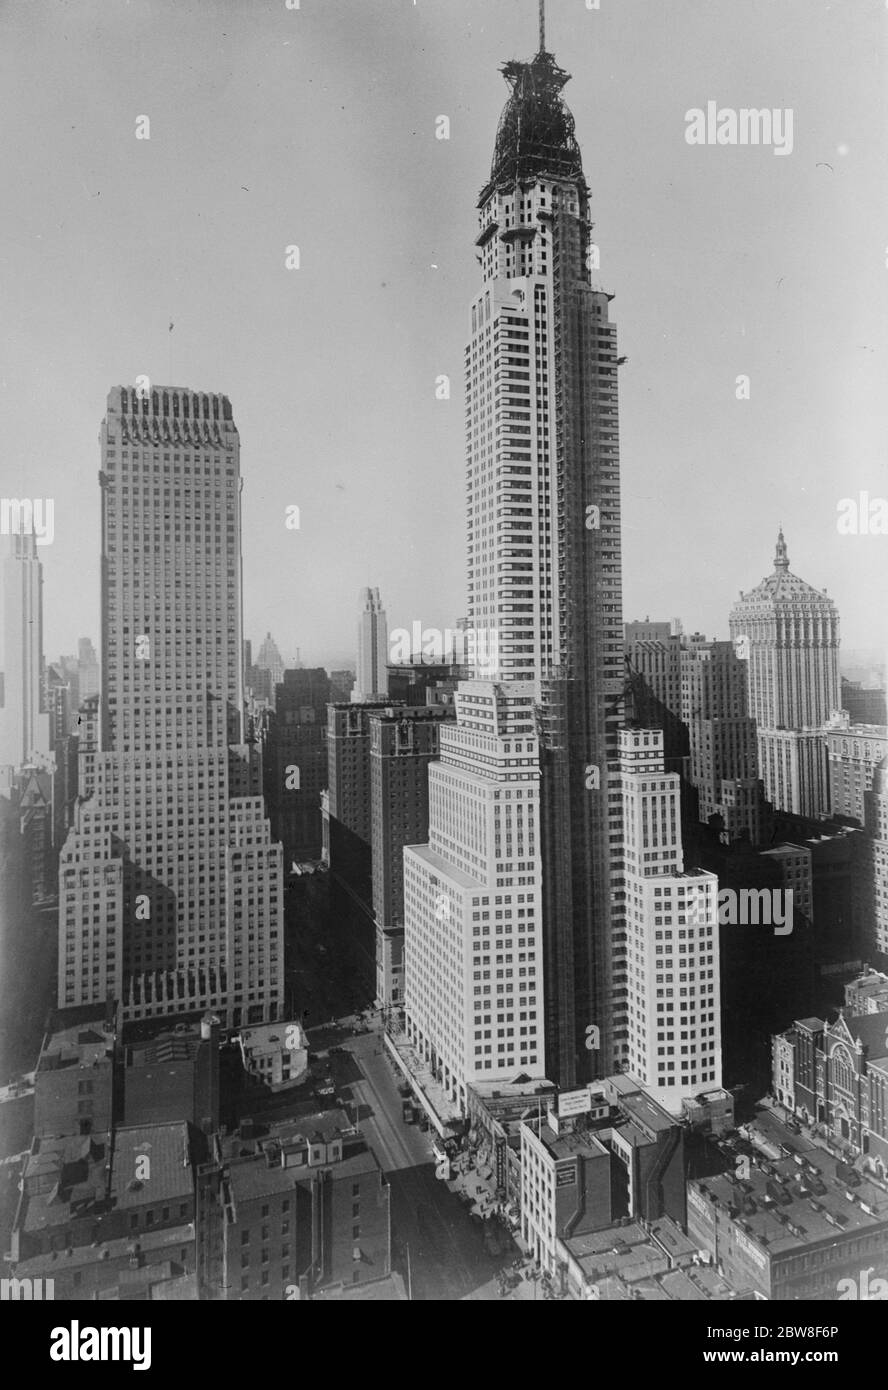 Das höchste Gebäude der Welt. Das höchste Gebäude der Welt, das neue Chrysler-Gebäude, das kurz vor der Fertigstellung steht. Es ist 68 Stockwerke hoch über 808 Fuß. Links nach rechts oben, das Lefcourt Colonial Gebäude, der Chanin, schräg gegenüber von der Chrysler an 42 Street und Lexington, und bei tirhgt, die New York Central. Die Paramount kann in der Ferne gesehen werden, links von der Mitte. 30. Oktober 1929 Stockfoto